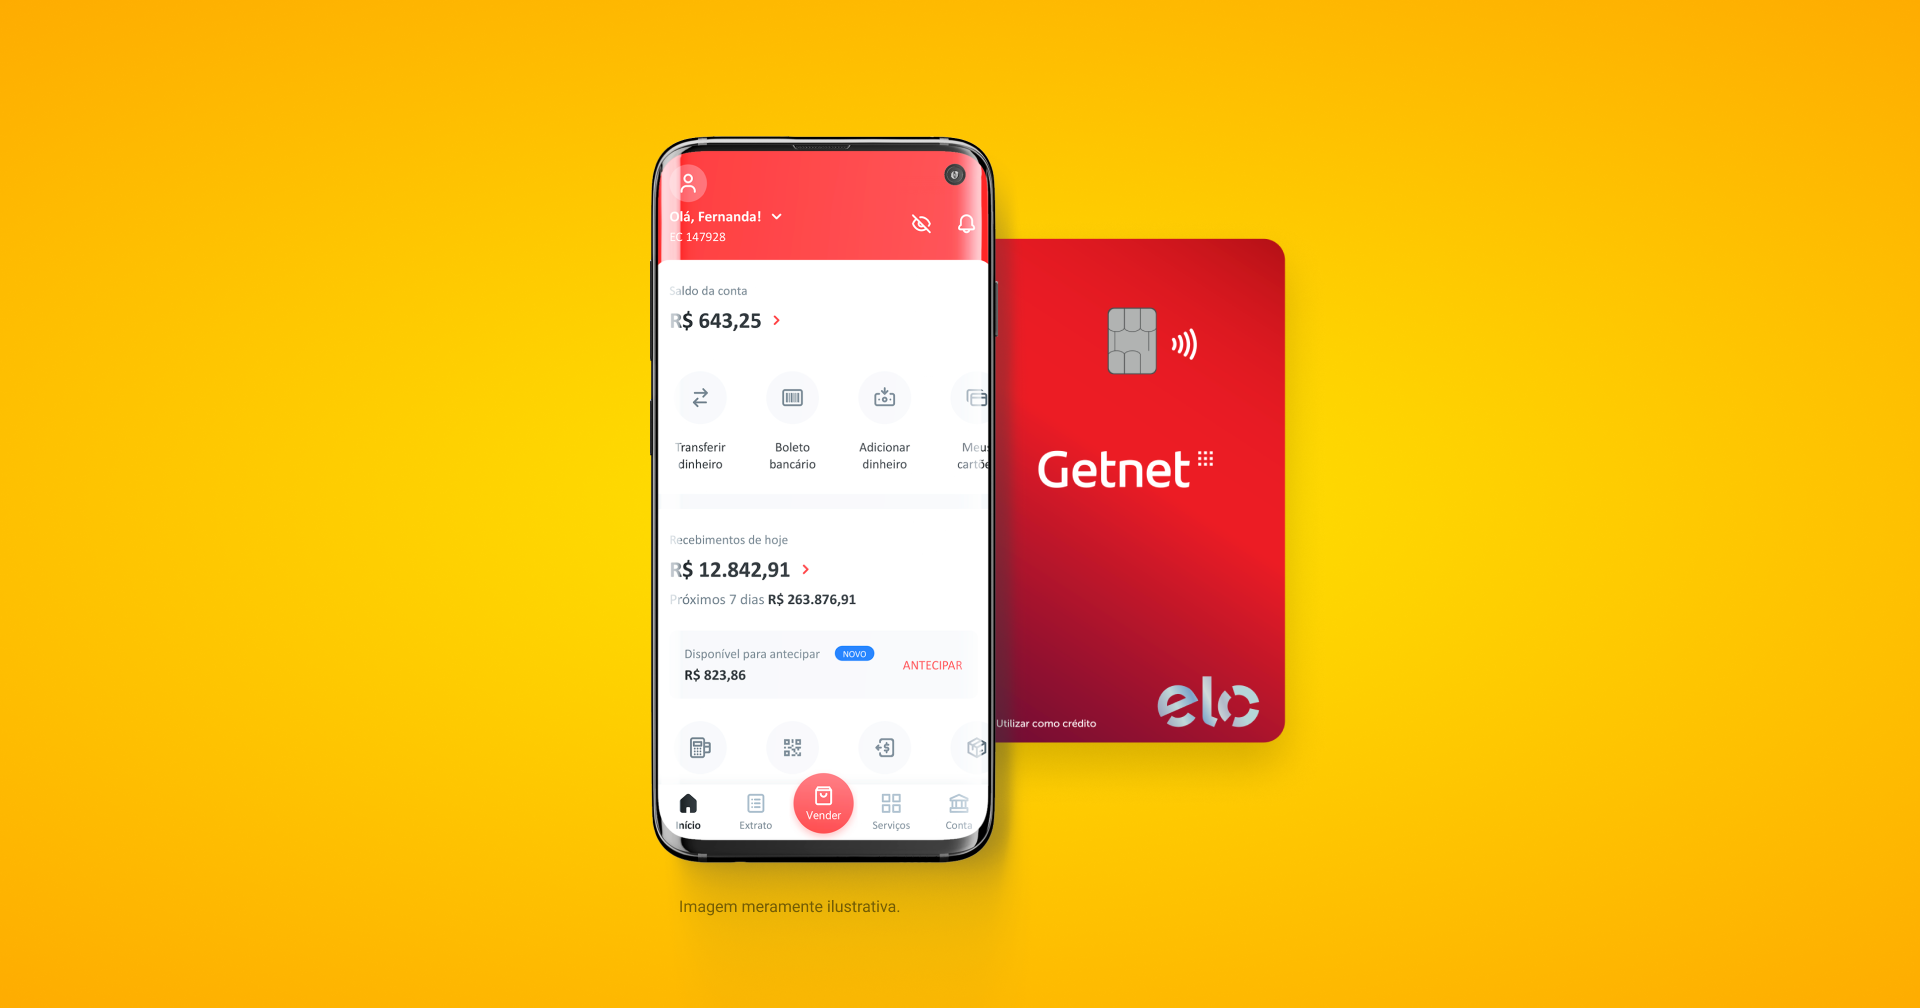 Celular com a tela do aplicativo Getnet e um cartão Getnet Elo atras